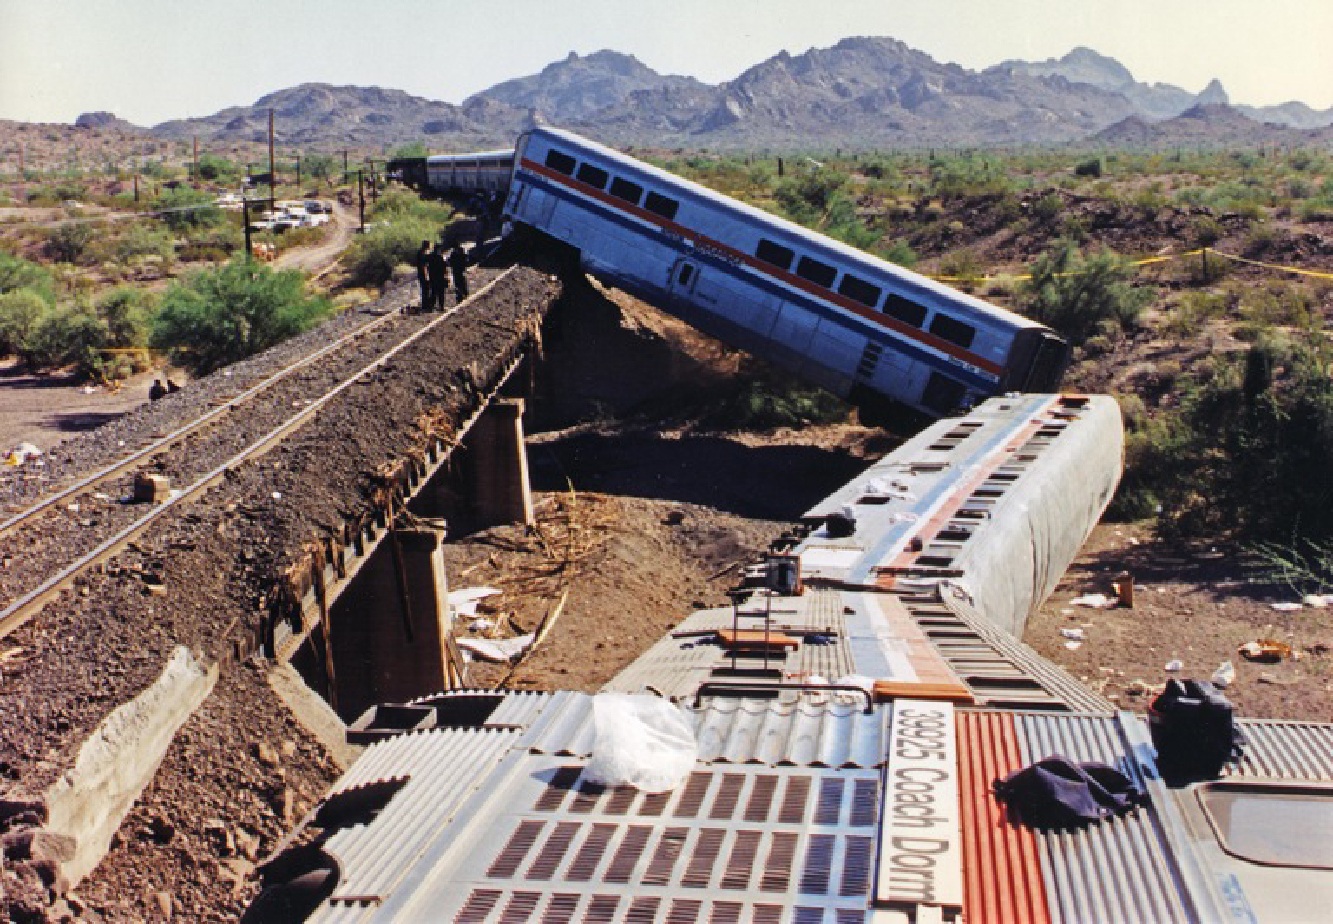 Amtrak train wreck in remote desert